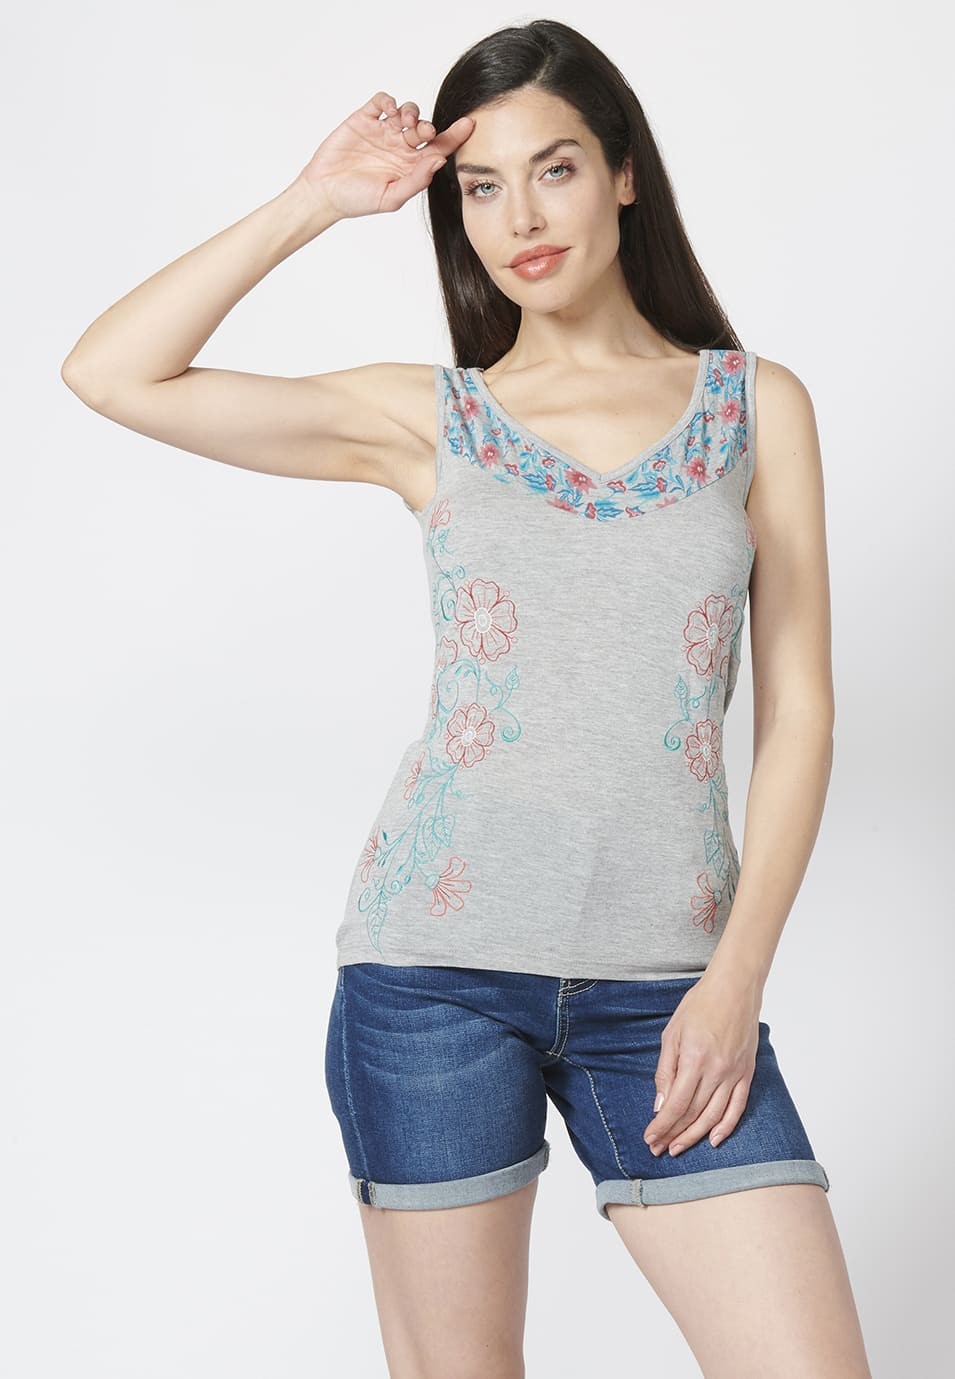 Camiseta Top tirantes con escote en Pico y Estampado y Bordados Florales para Mujer color Gris